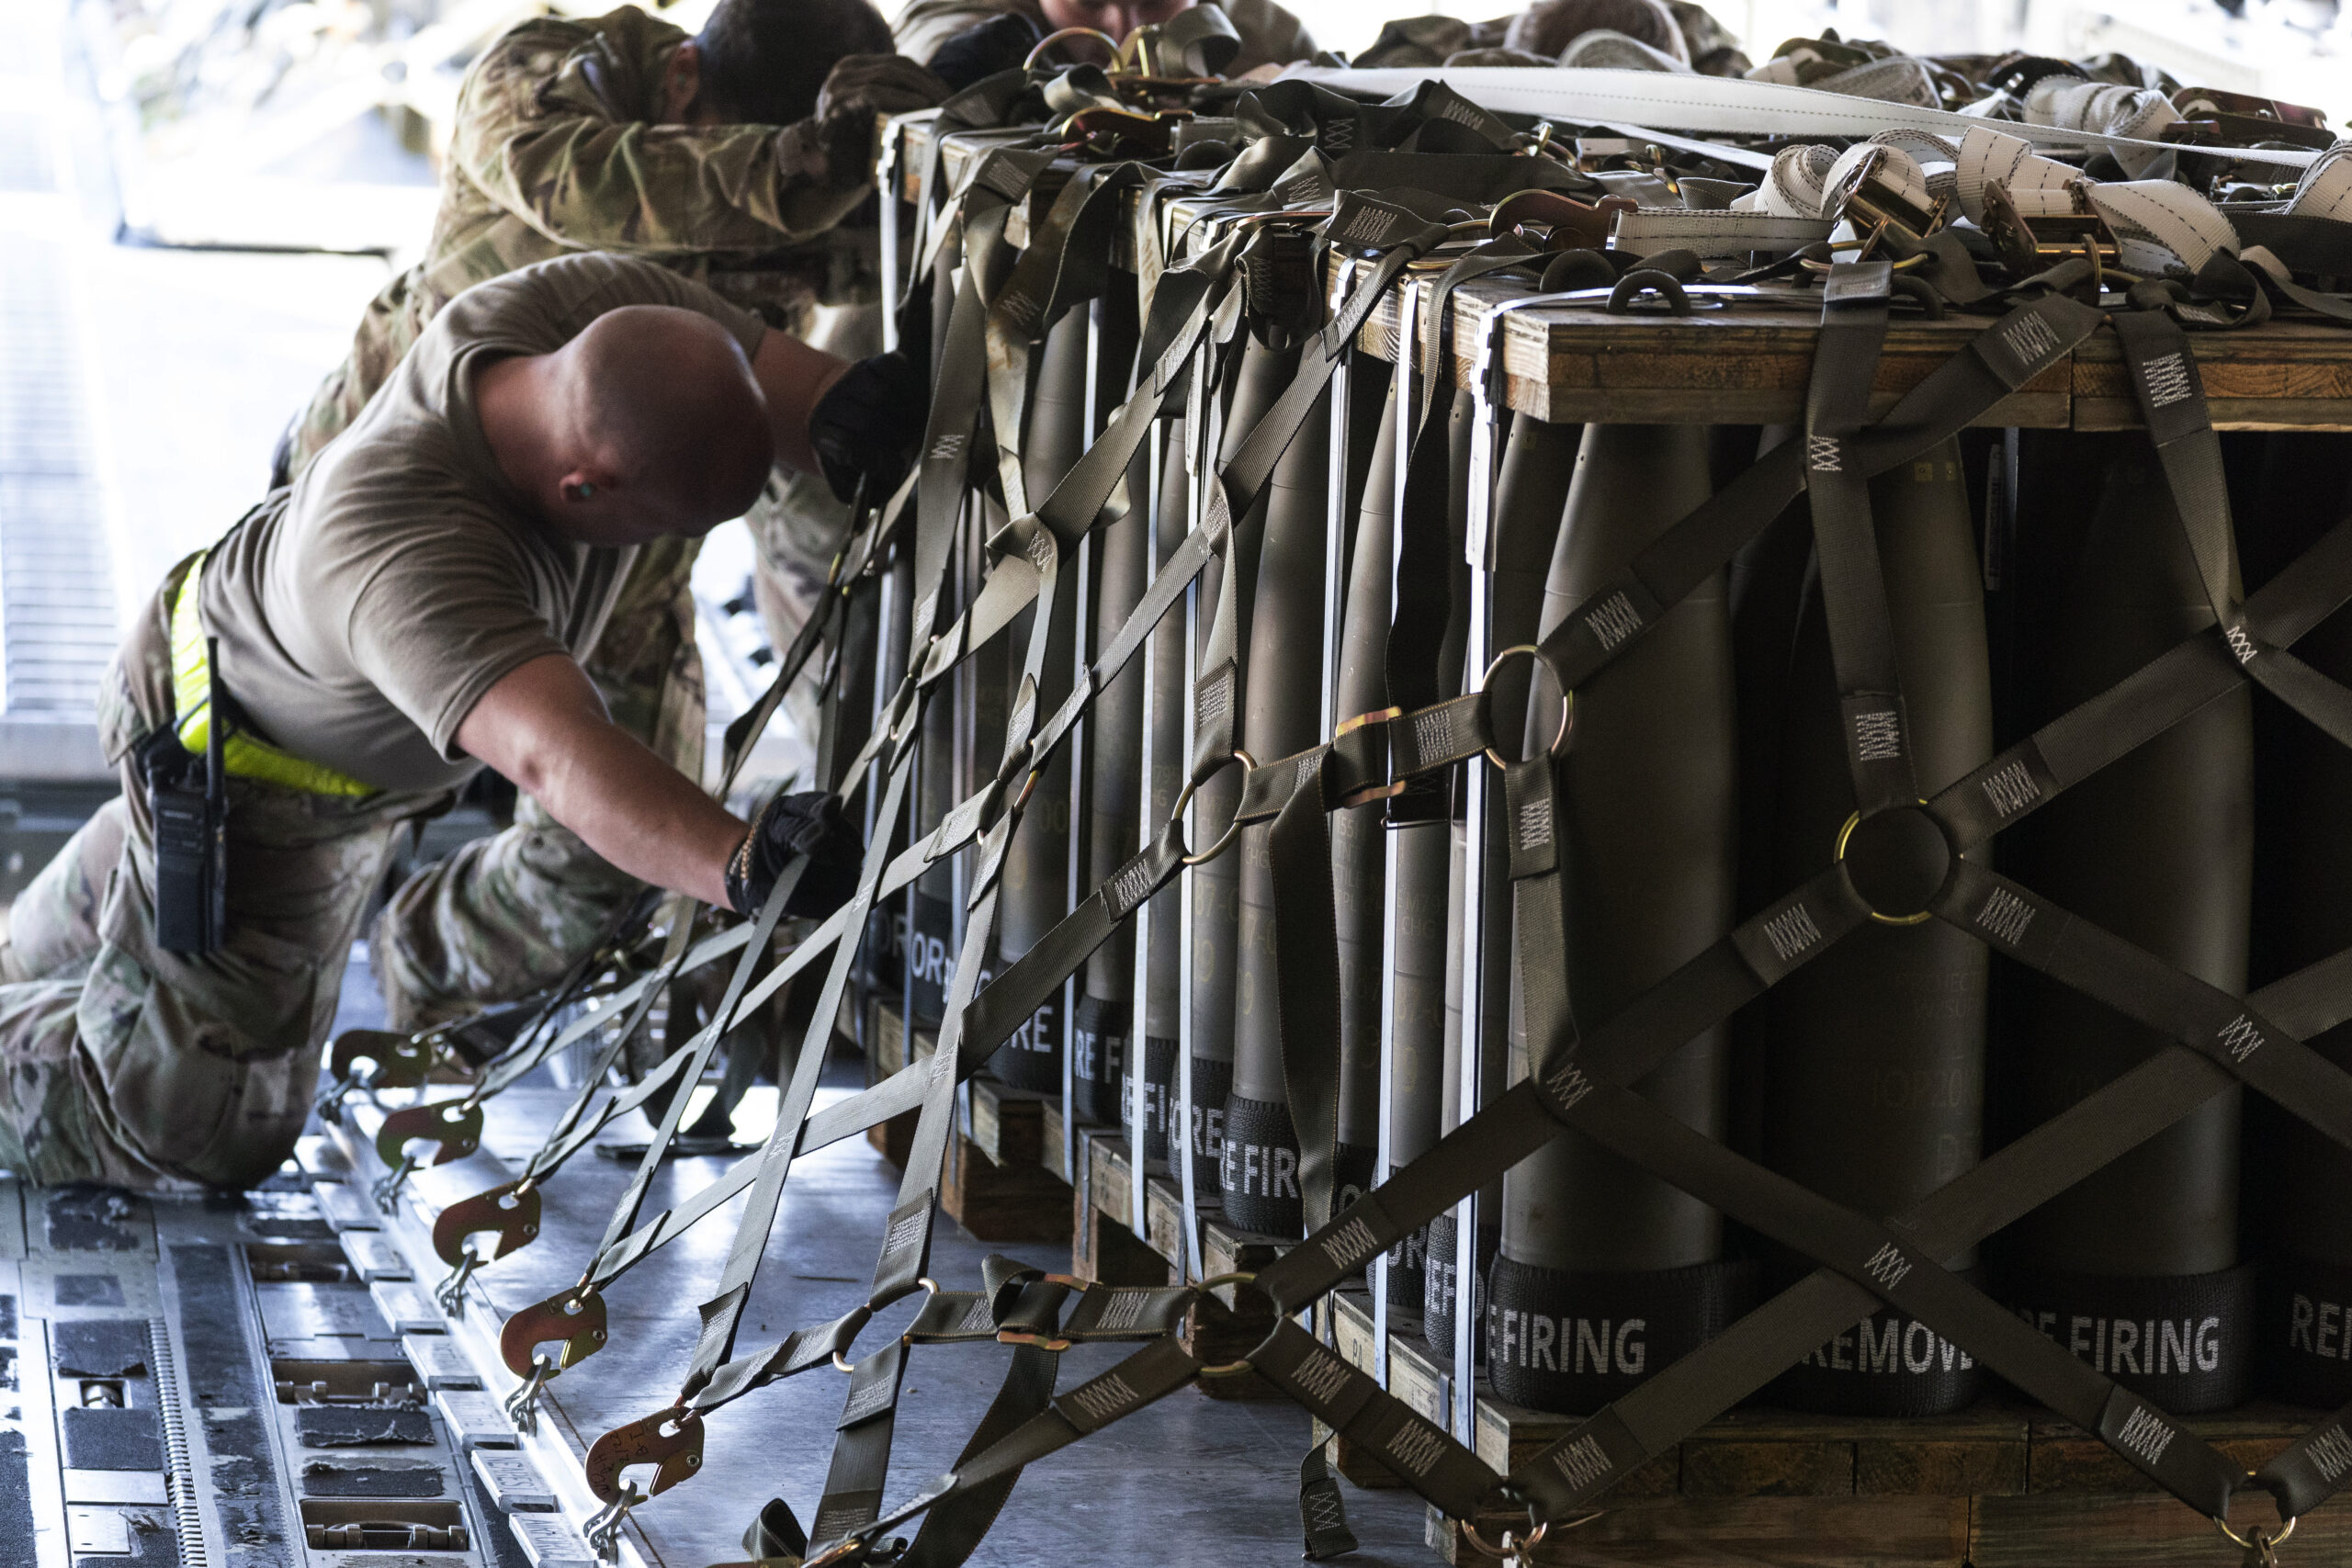 155-миллиметровые снаряды загружают в самолет для поставок в Украину. Фото AP/Алекс Брэндон / Scanpix / LETA.